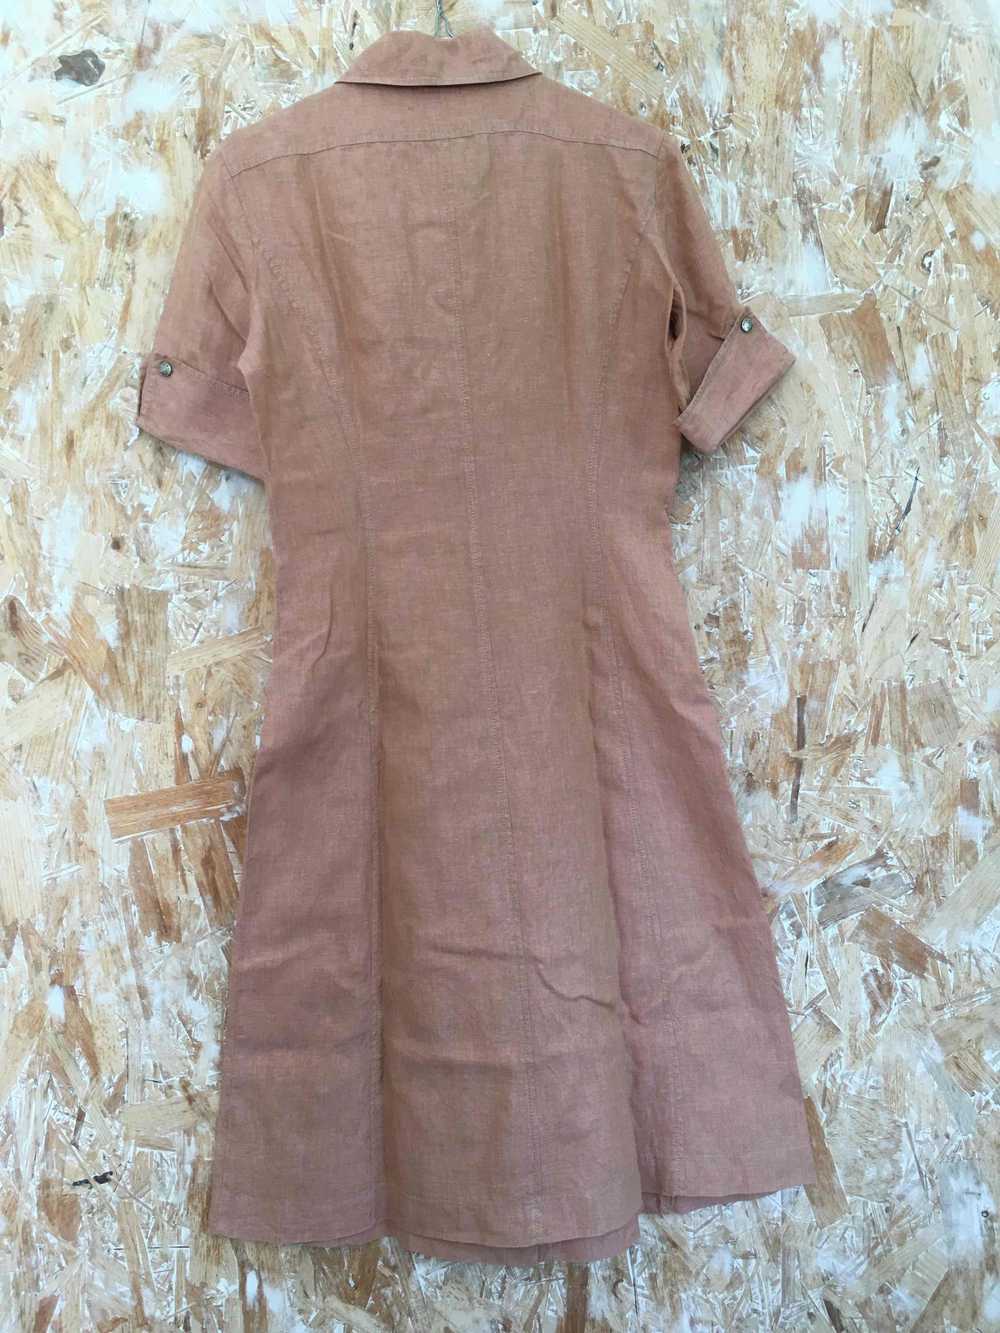 Linen shirt dress - Georges Rech Sport linen shir… - image 2